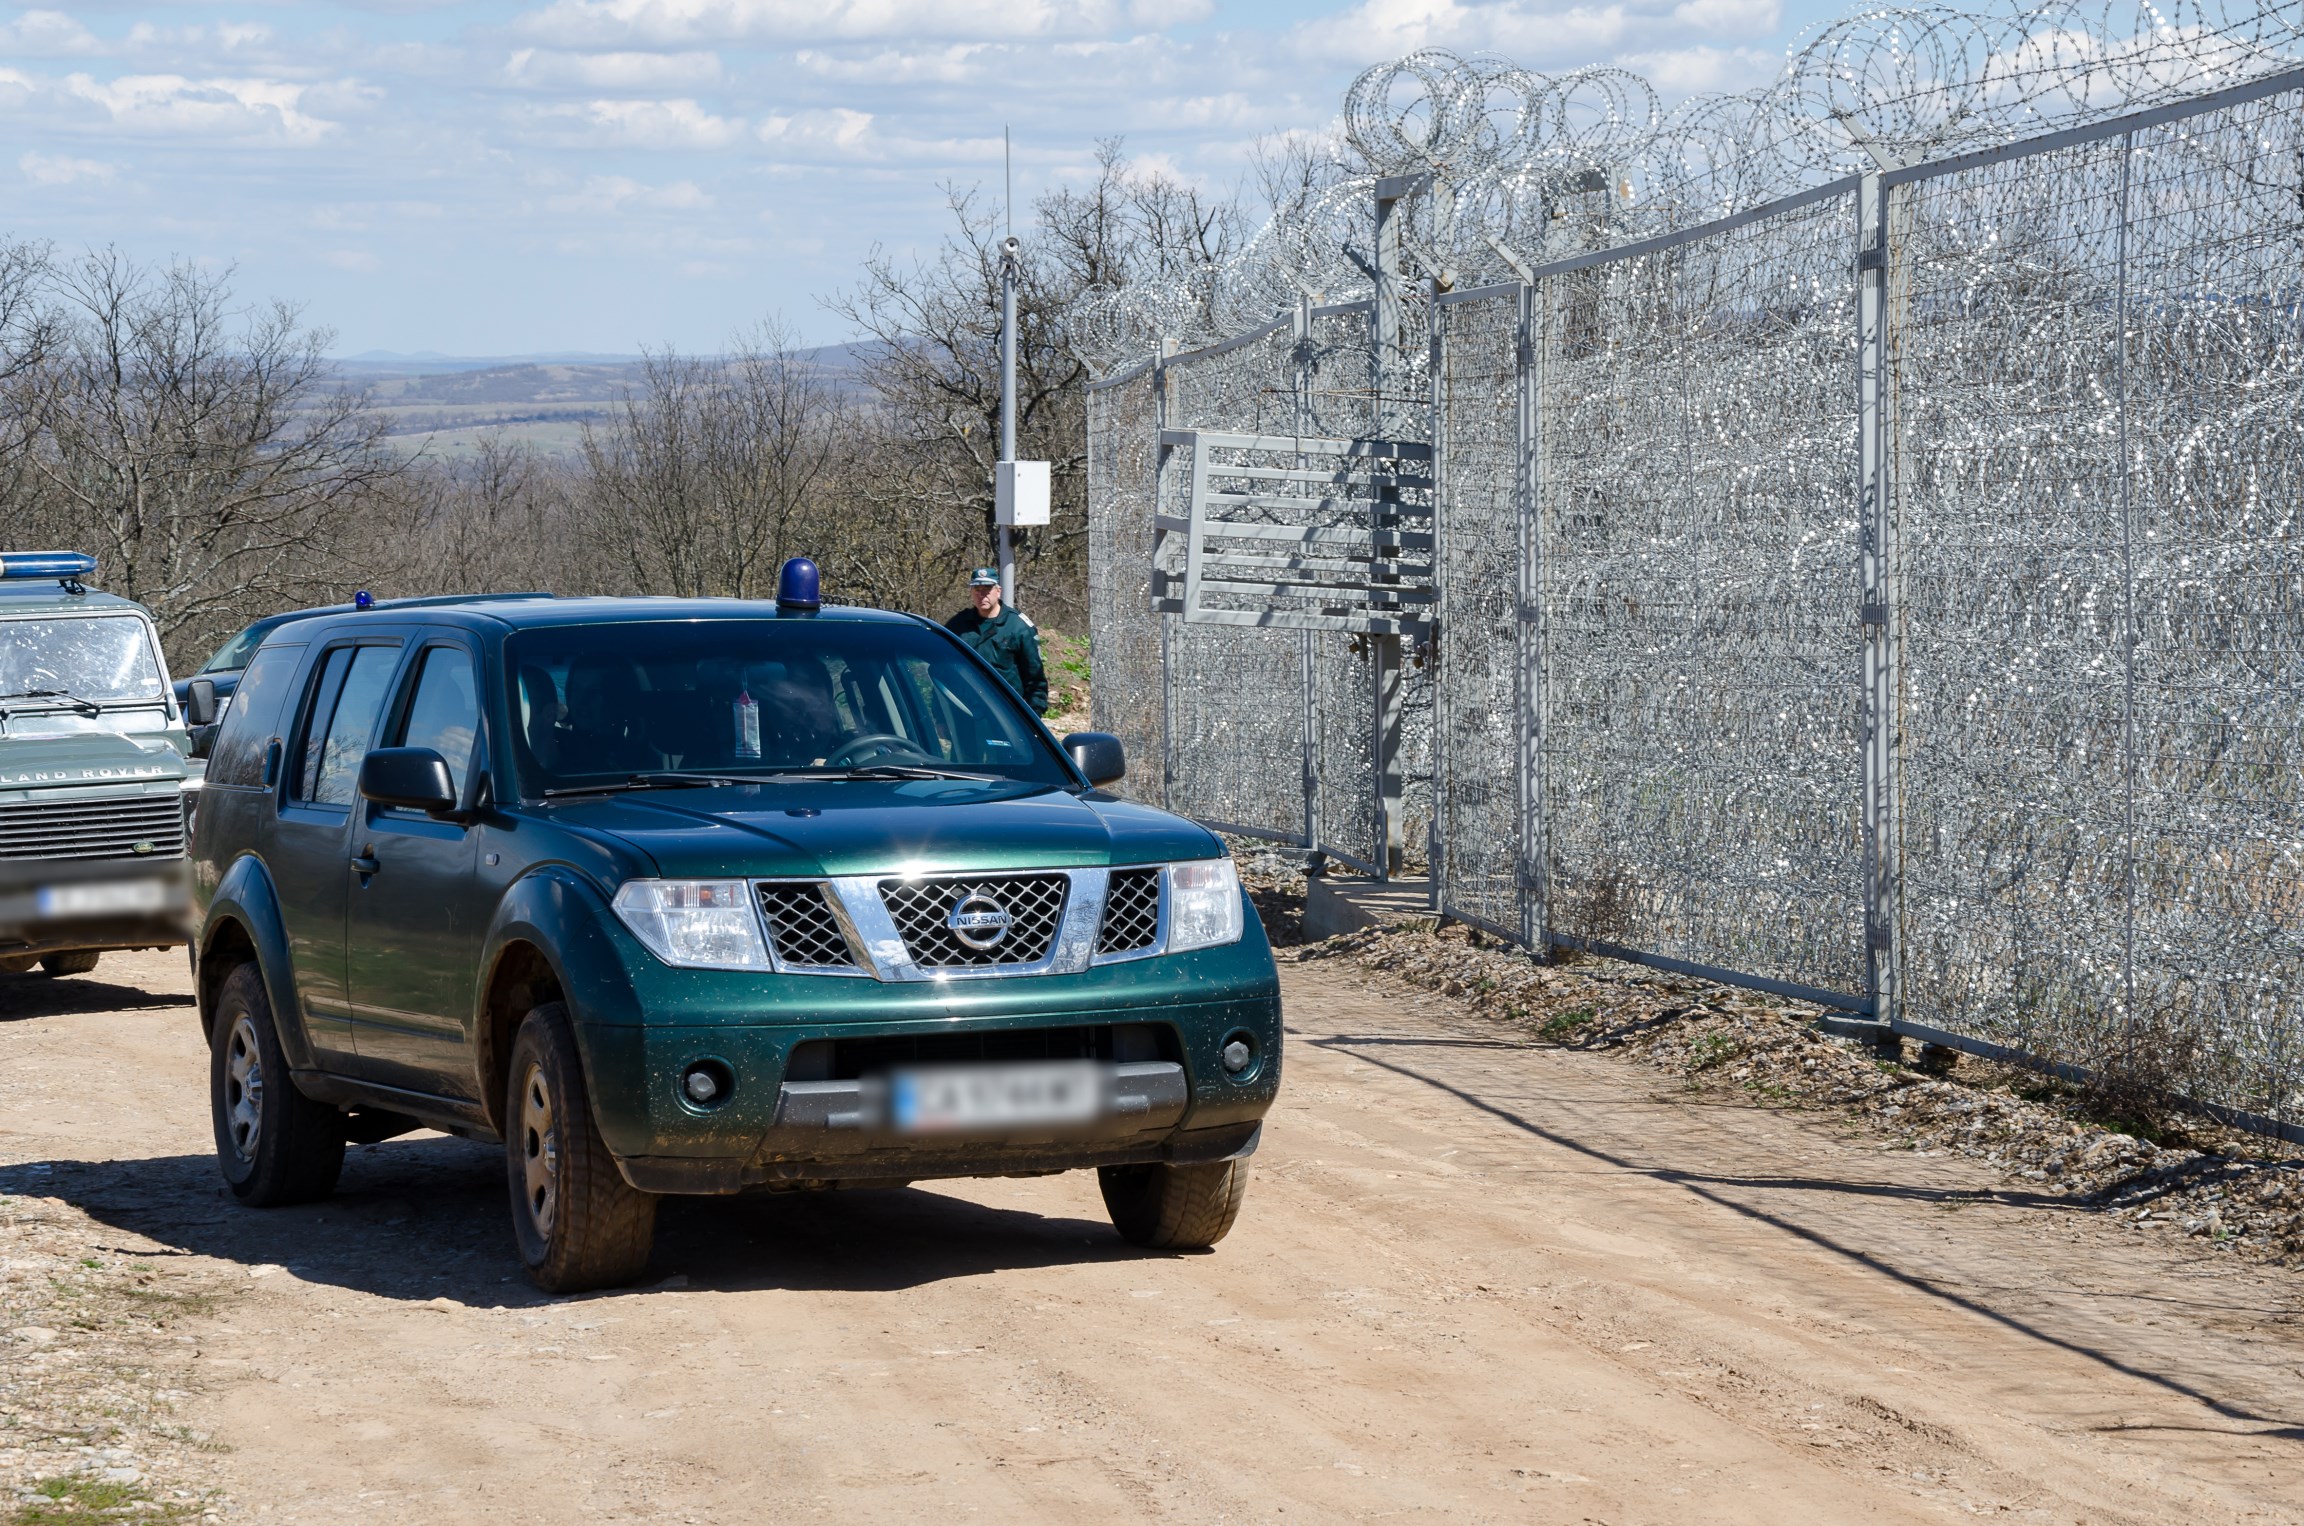 Slavný bulharský plot na hranici s Tureckem. Délka zatím 33 kilometrů, výška tři metry, poznávací znamení ostnatý drát. A inspirace pro Maďarsko, kde podobný plot začali stavět.